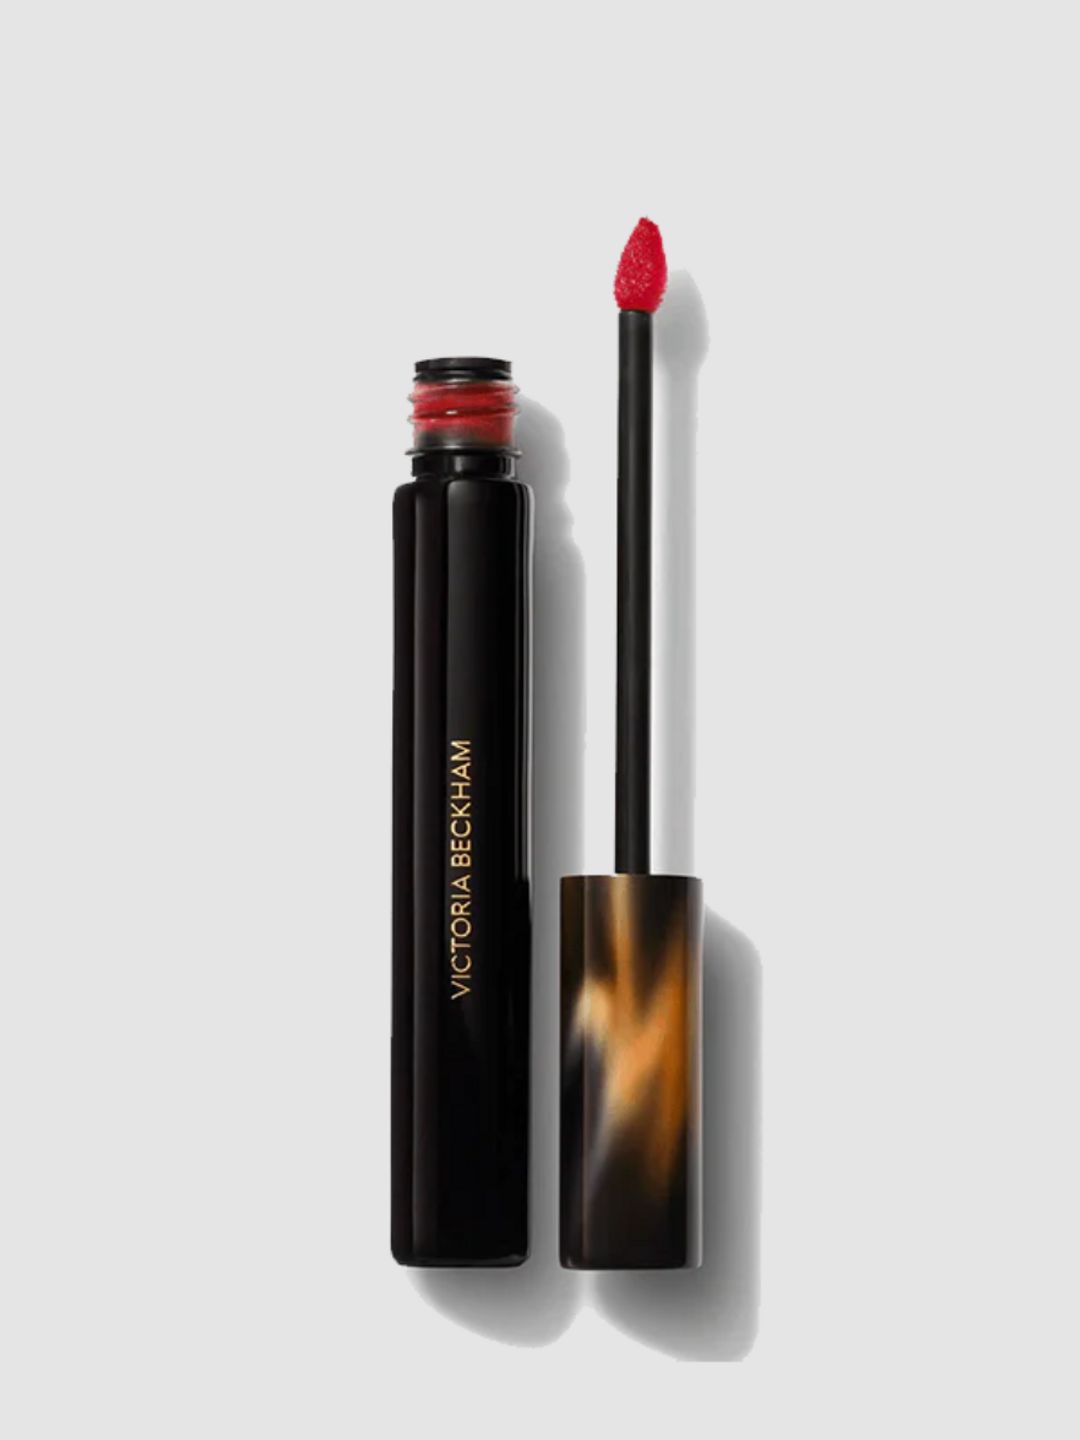 Red lipstick - Victoria Beckham 